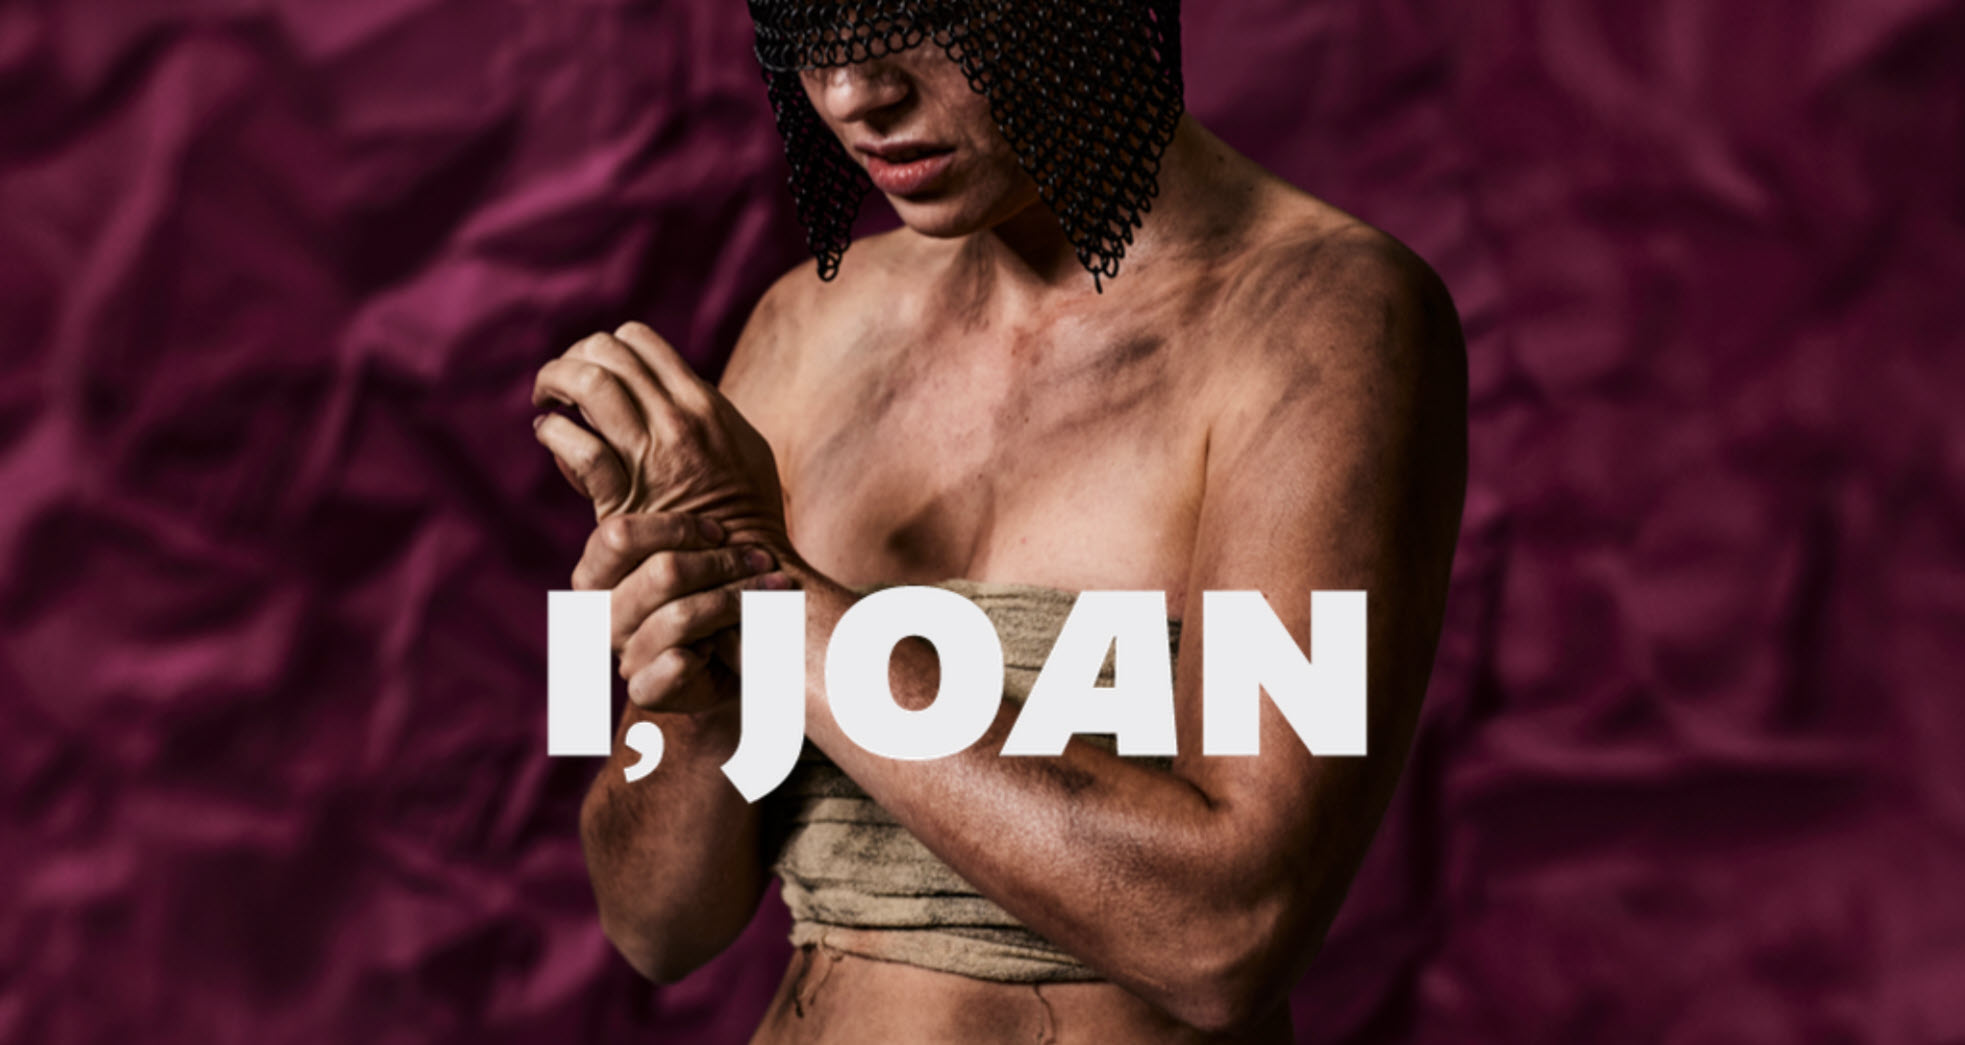 I, Joan